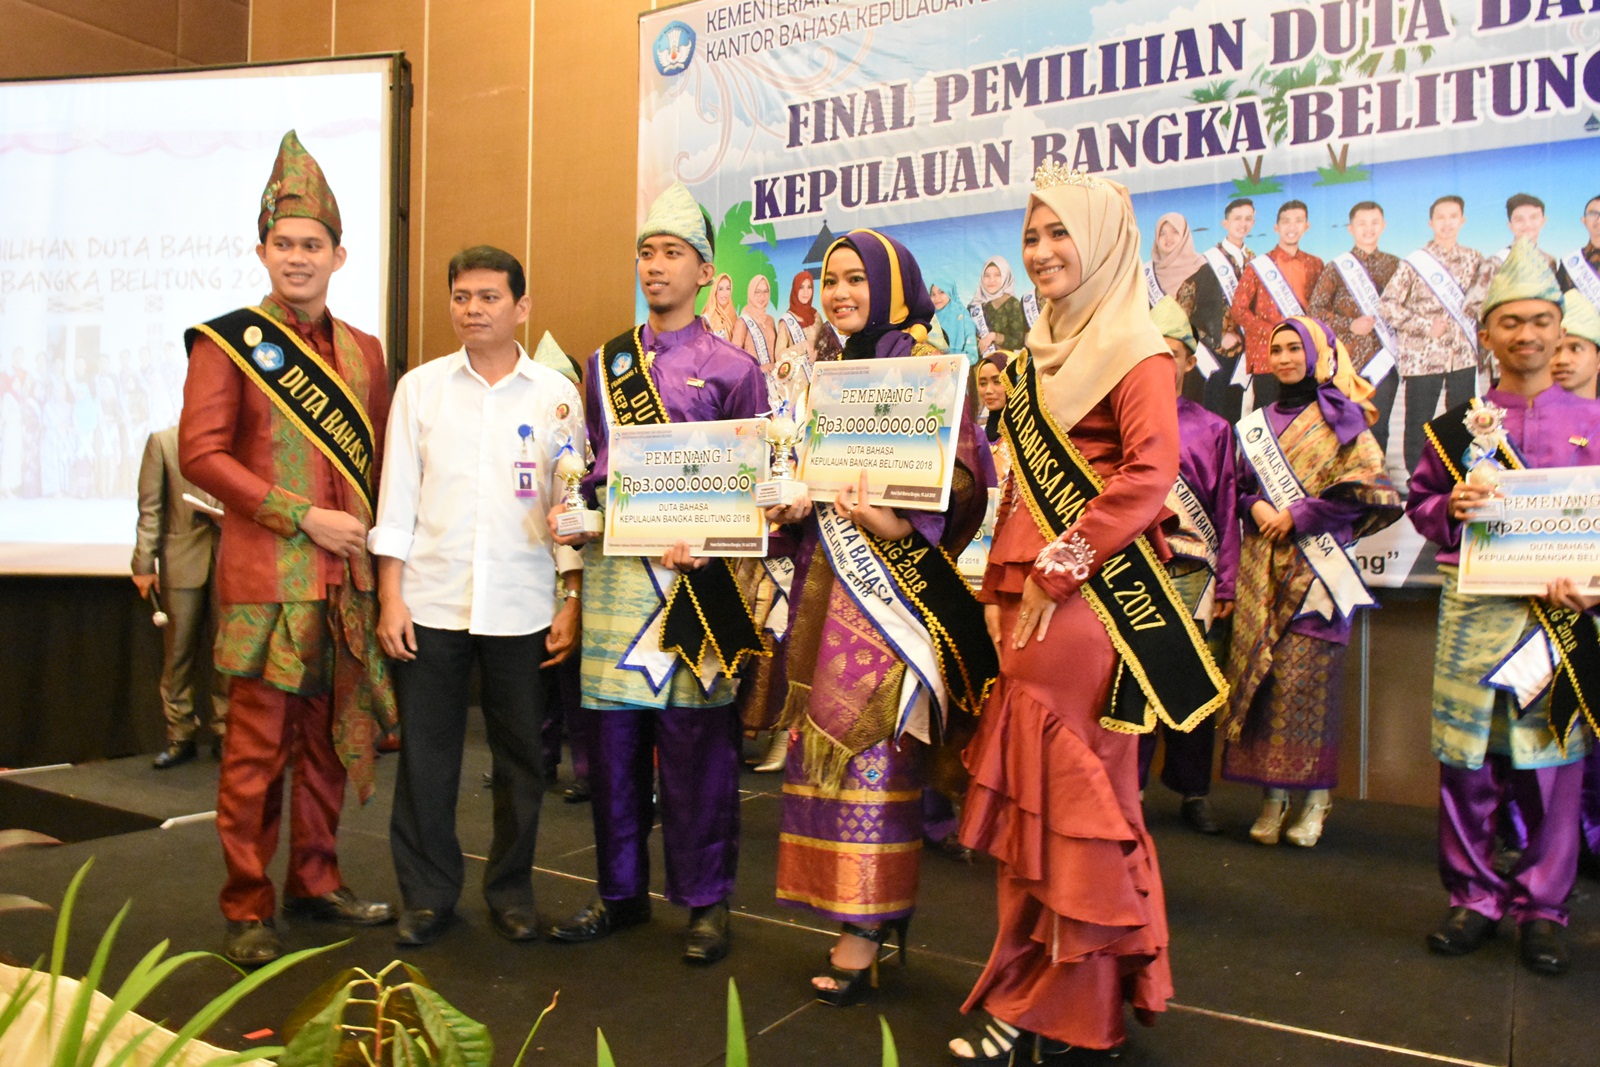 Arinda dan Meisya Wakili Bumi Serumpun Sebalai pada Pemilihan Duta Bahasa Tingkat Nasional 2018